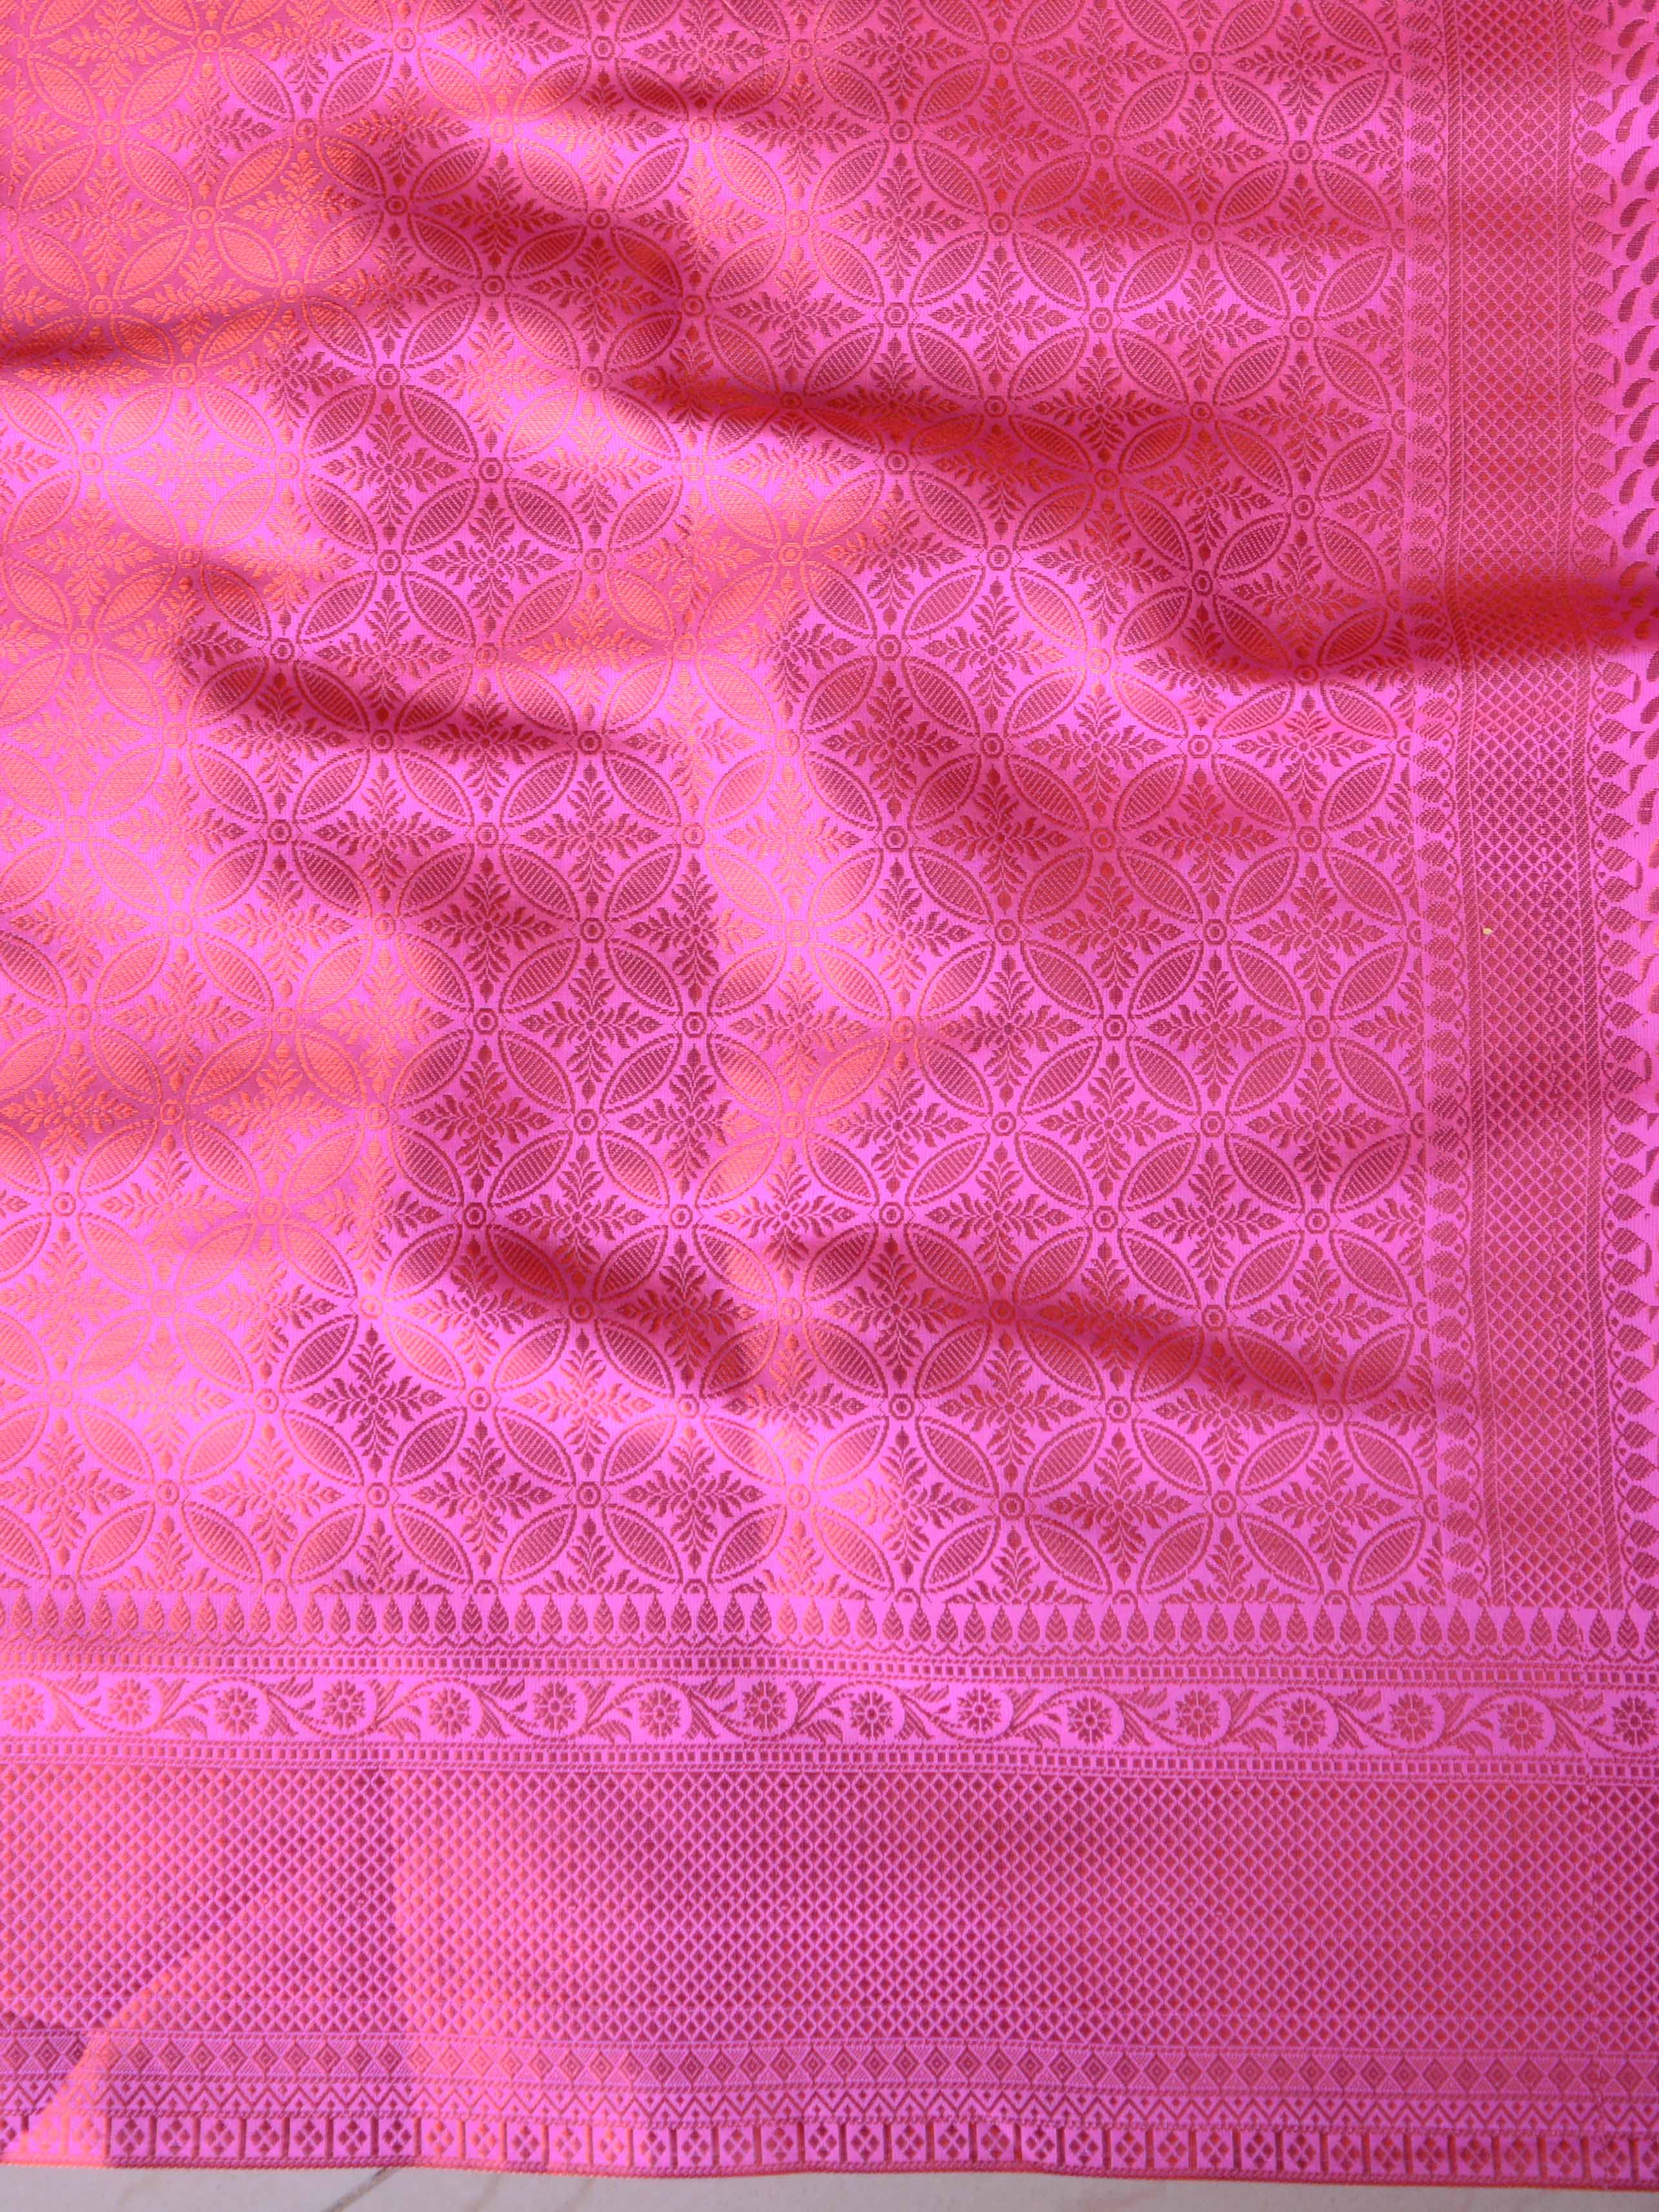 Banarasee Handwoven Semi Silk Saree With Copper Zari Buti Design-Pink